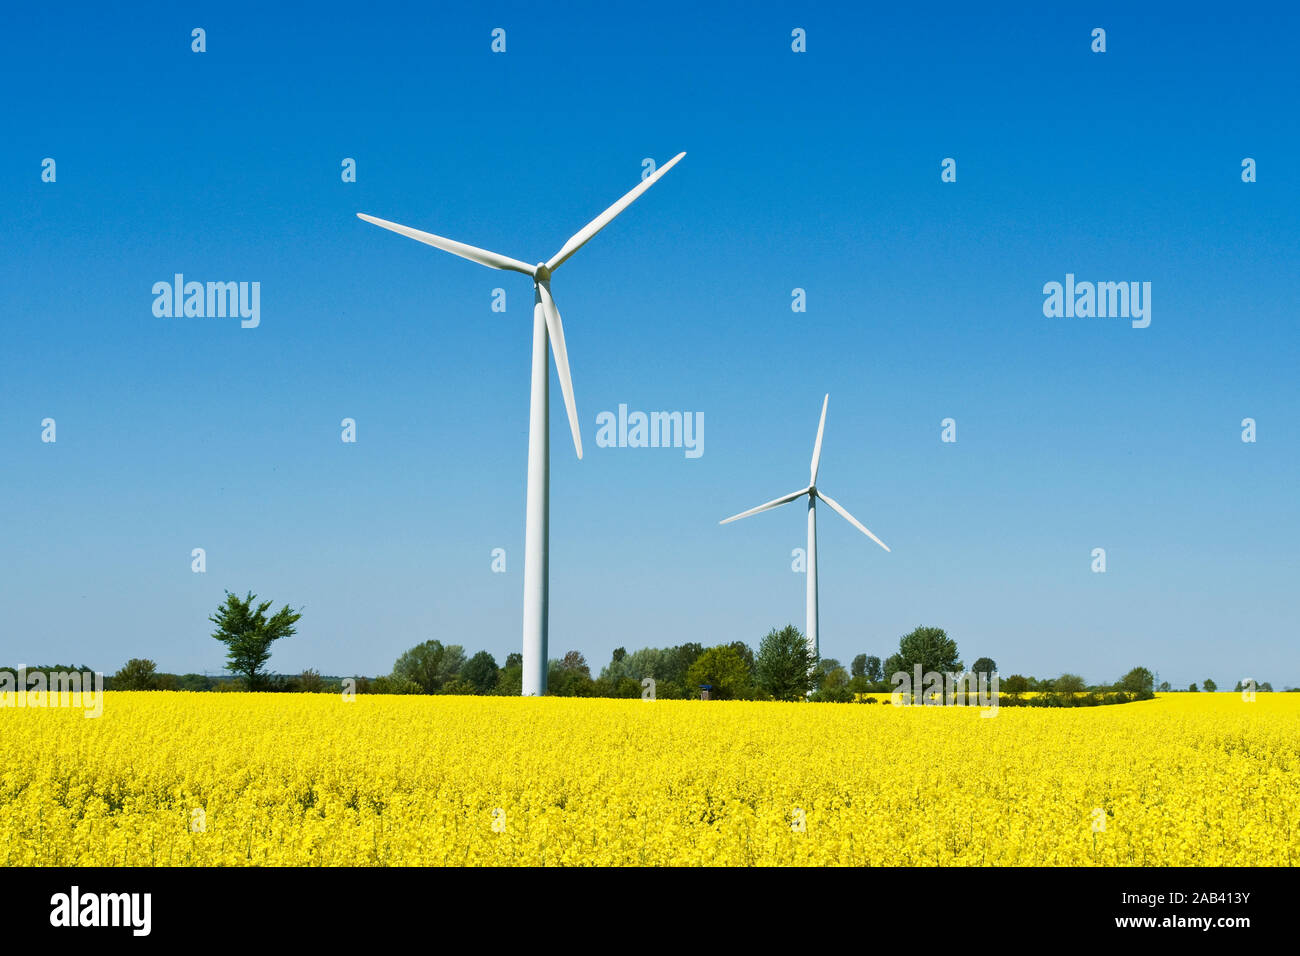 Windkraftanlagen in einem Rapsfeld Stock Photo